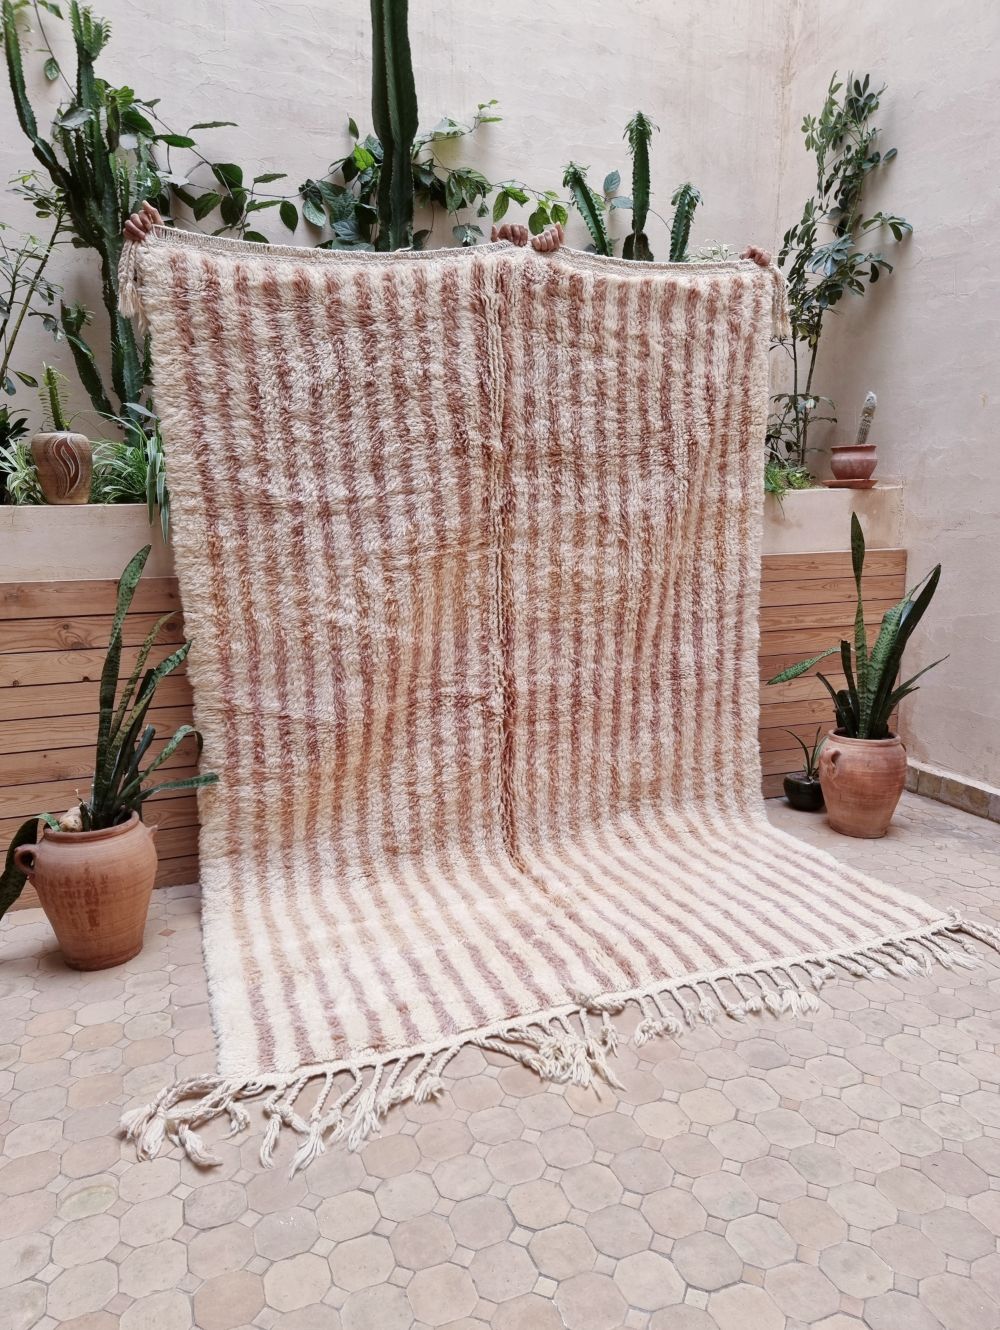 Marokkolainen Stripe matto 255x180cm